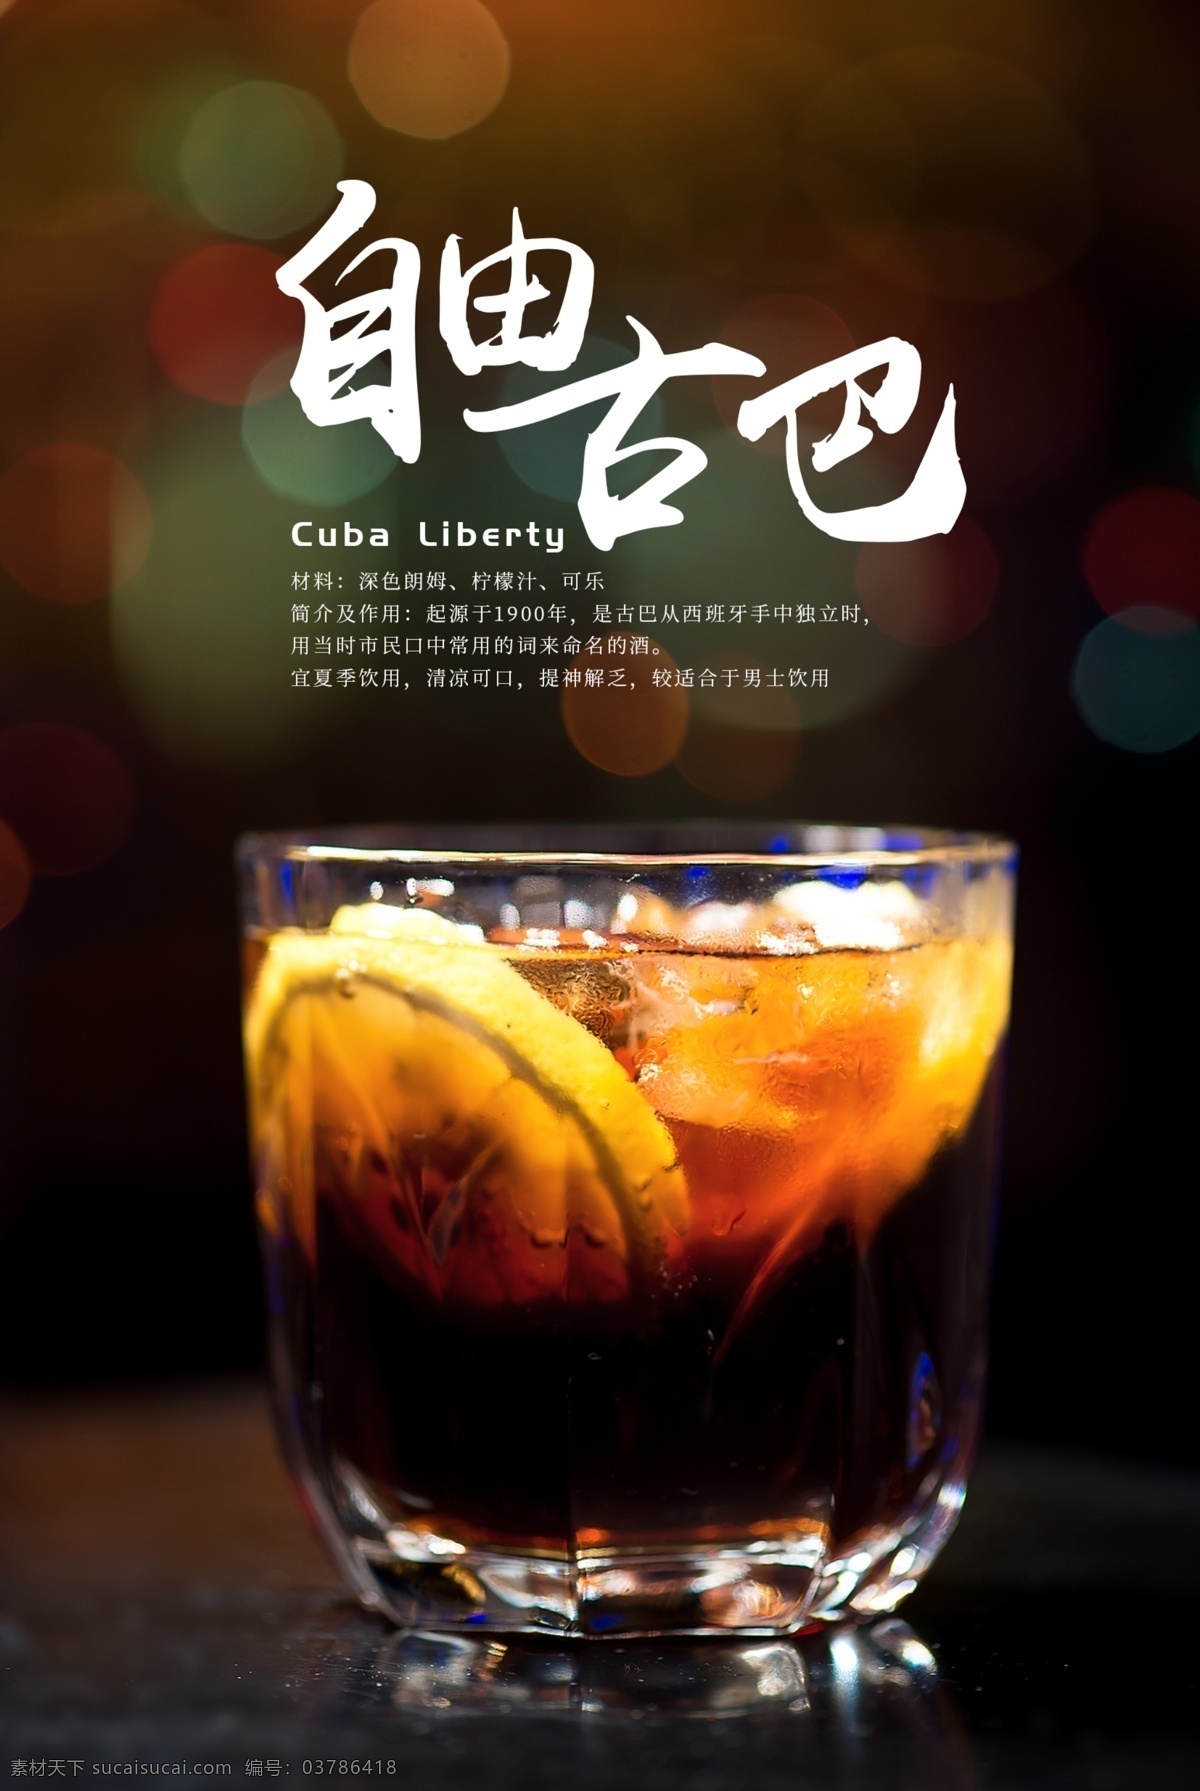 自由 古巴 鸡尾酒 自由古巴 酒吧 鸡尾酒图片 大气海报